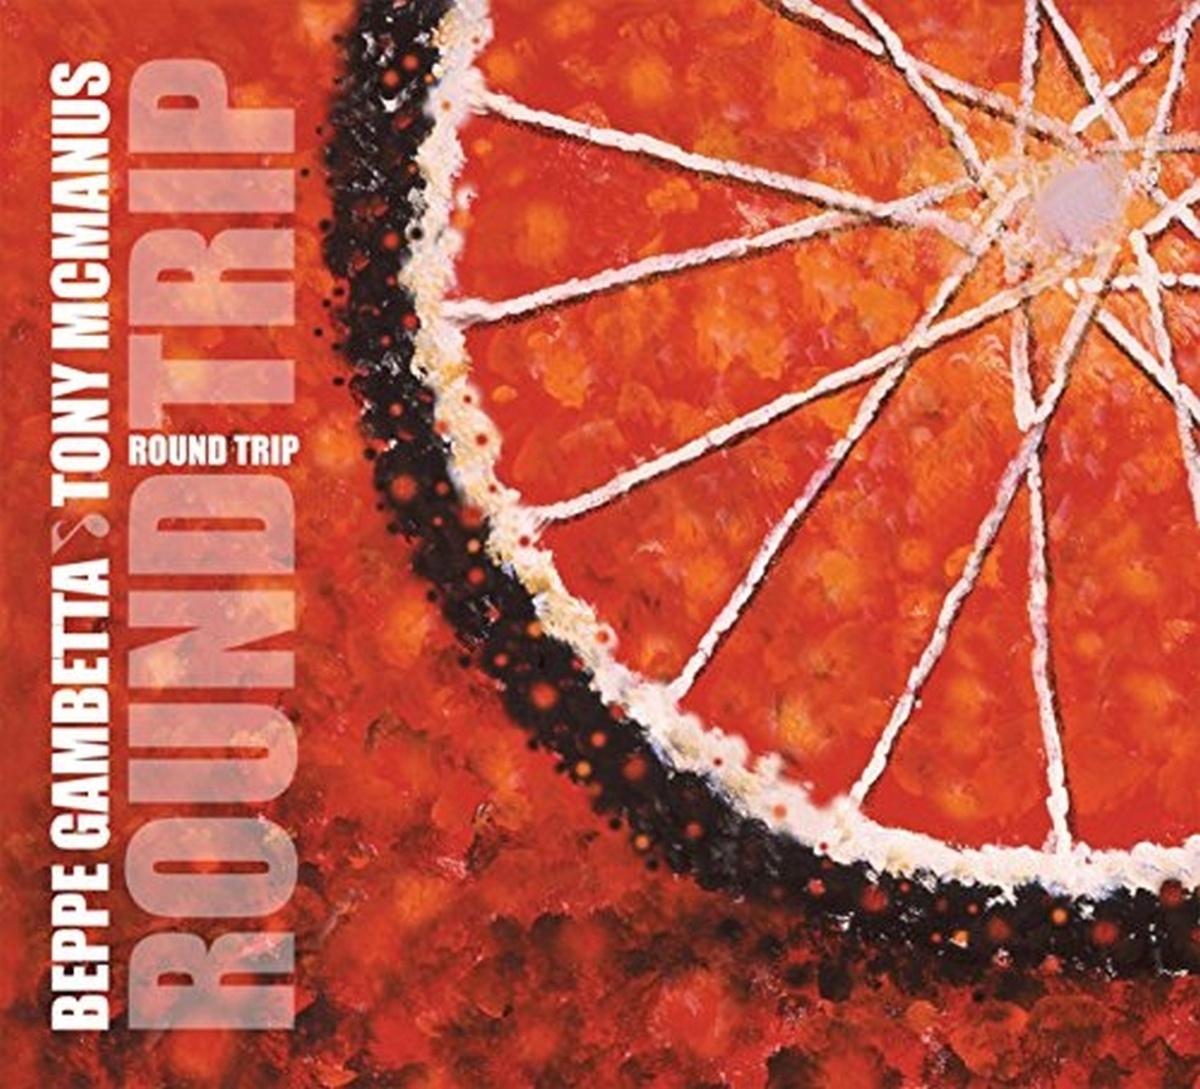 Round Trip - Beppe Gambetta & McManus Ton. (CD)